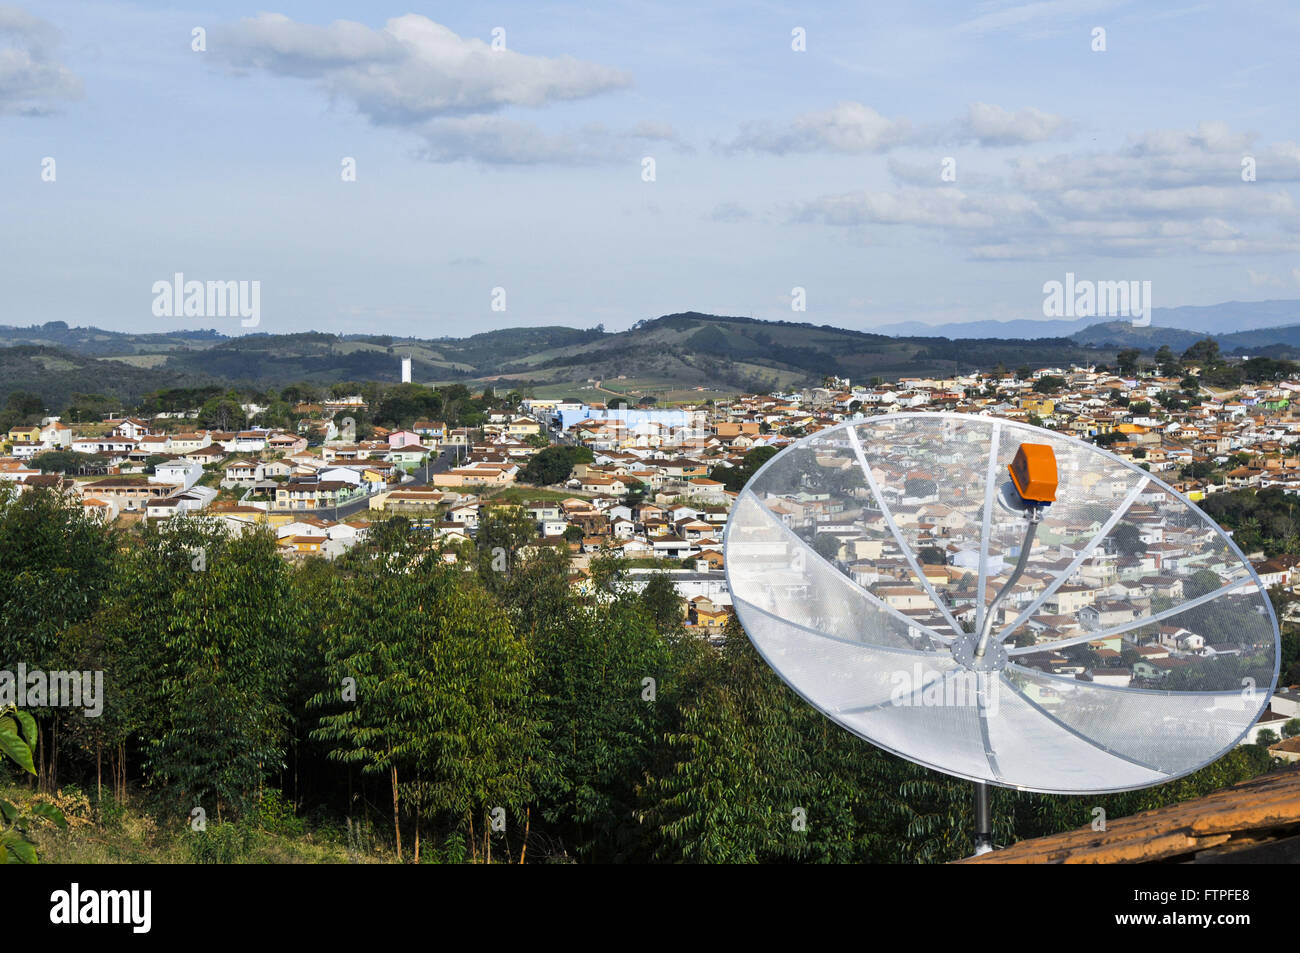 Resalte de antena parabólica, vivienda y vistas a la ciudad en el fondo Foto de stock